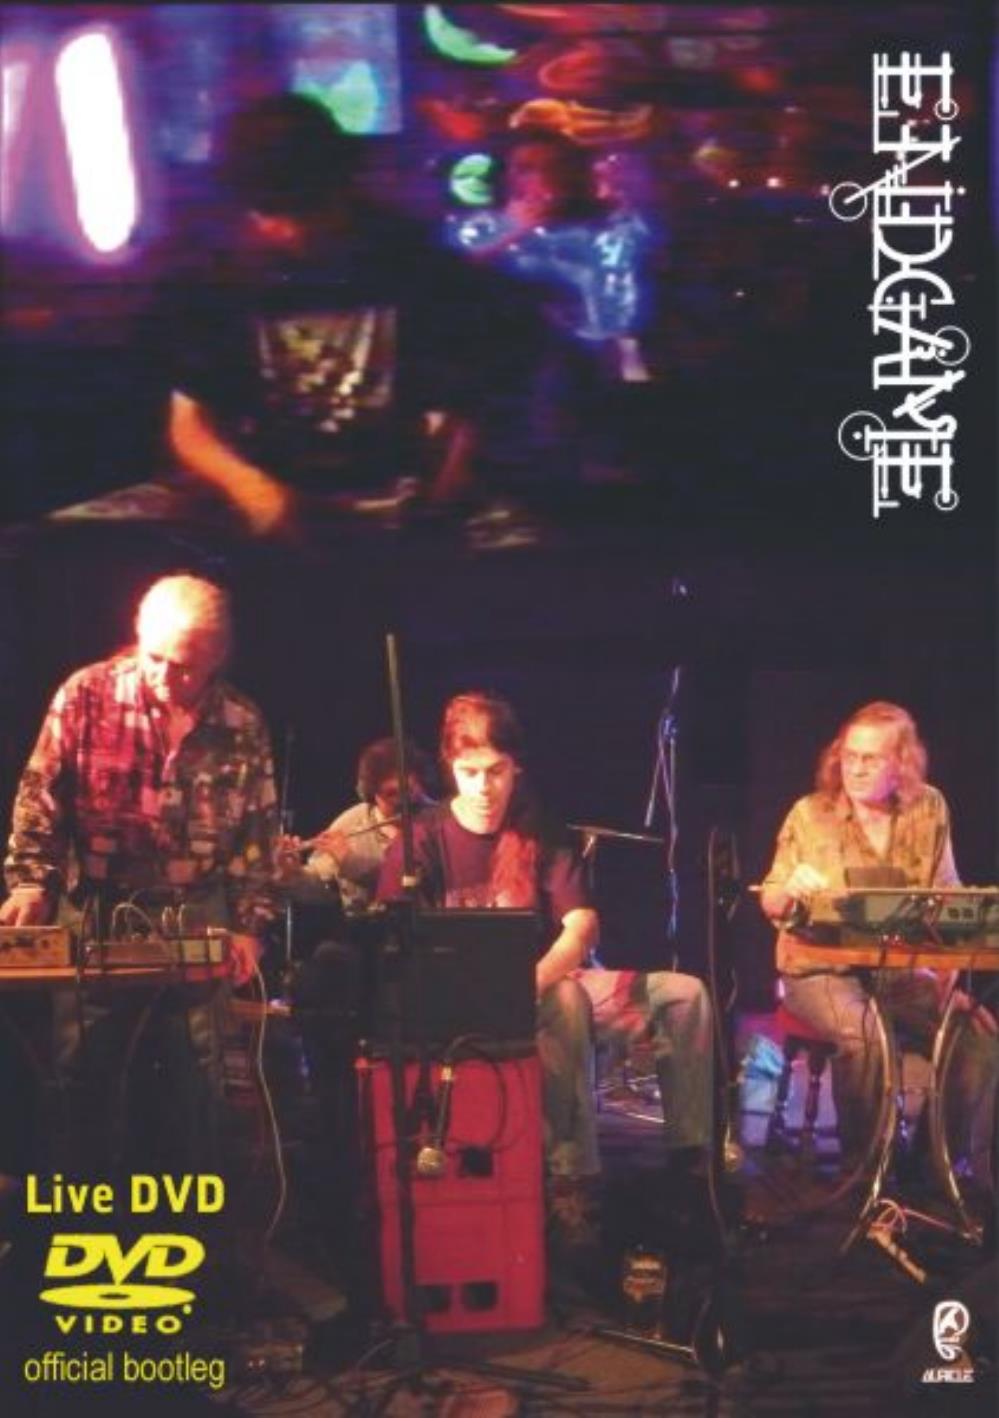 Endgame Live DVD Official Bootleg album cover